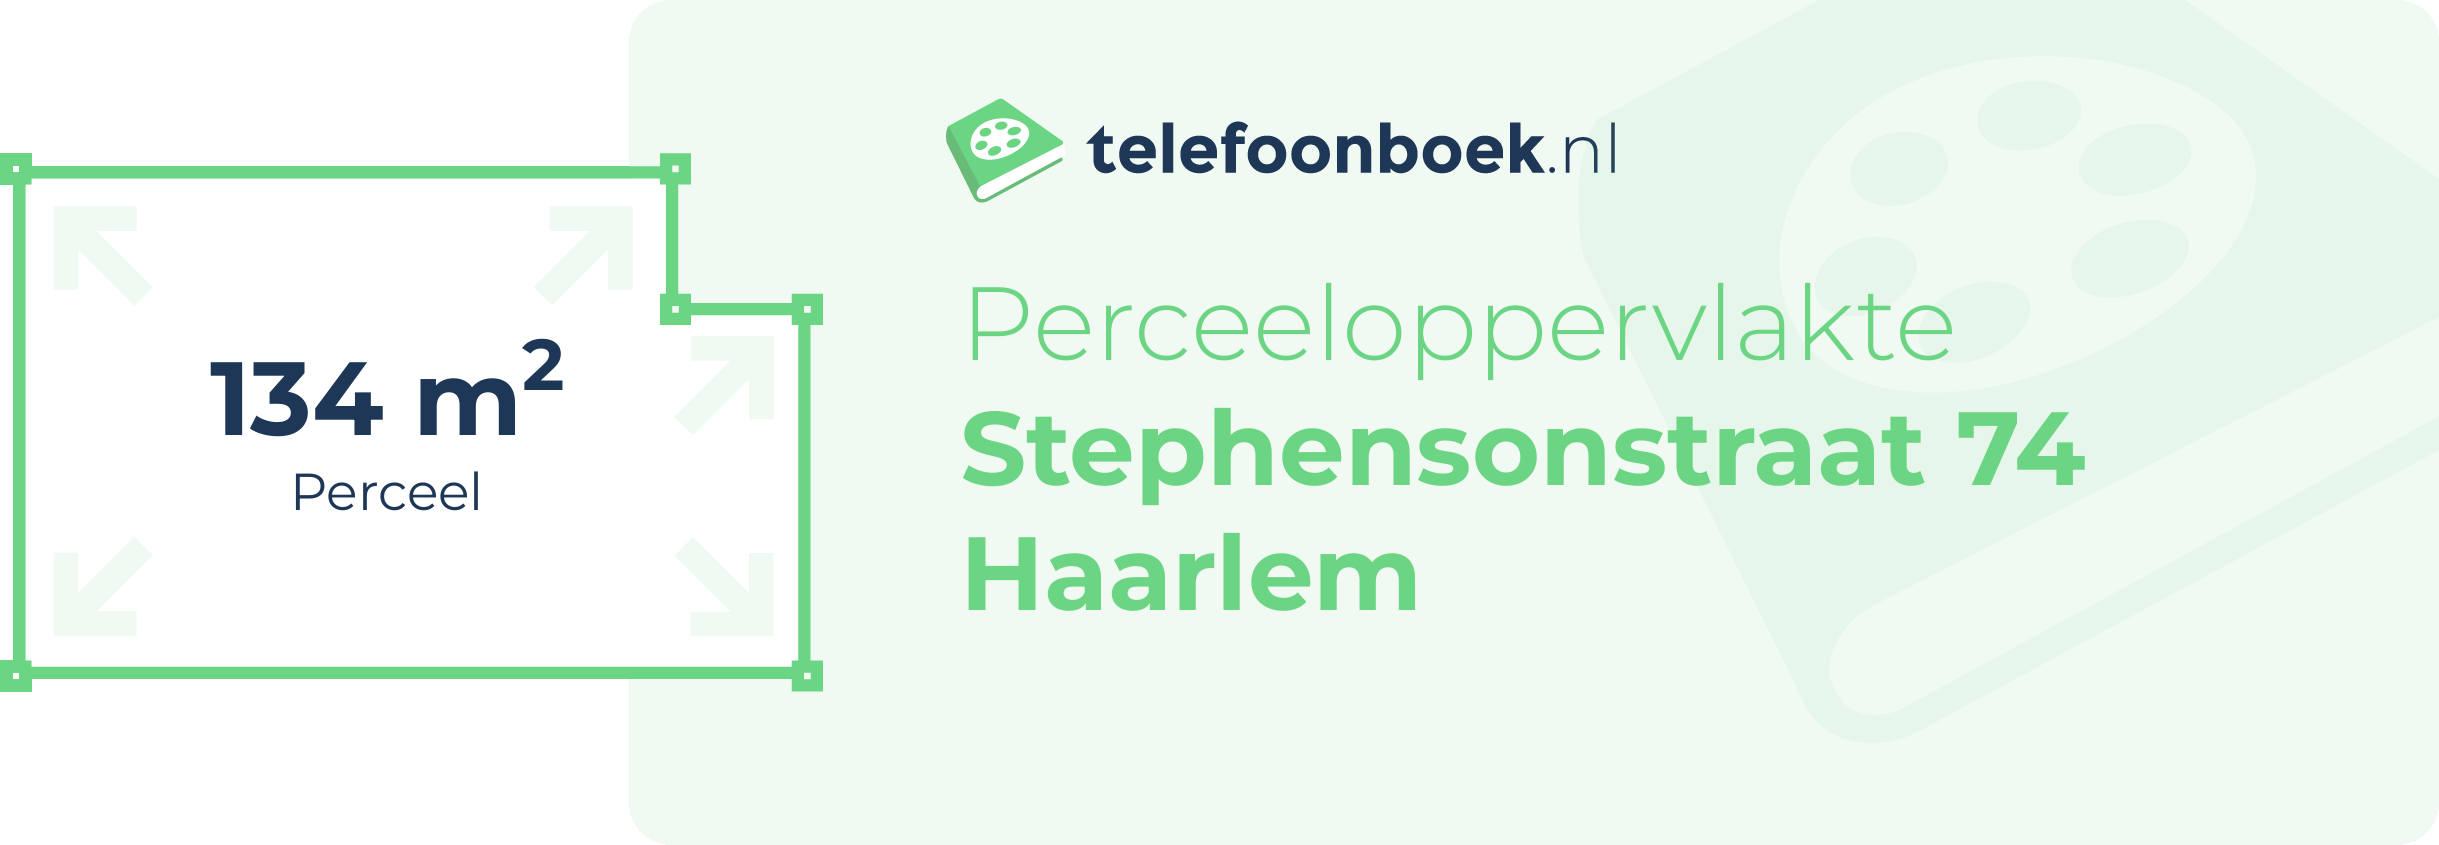 Perceeloppervlakte Stephensonstraat 74 Haarlem